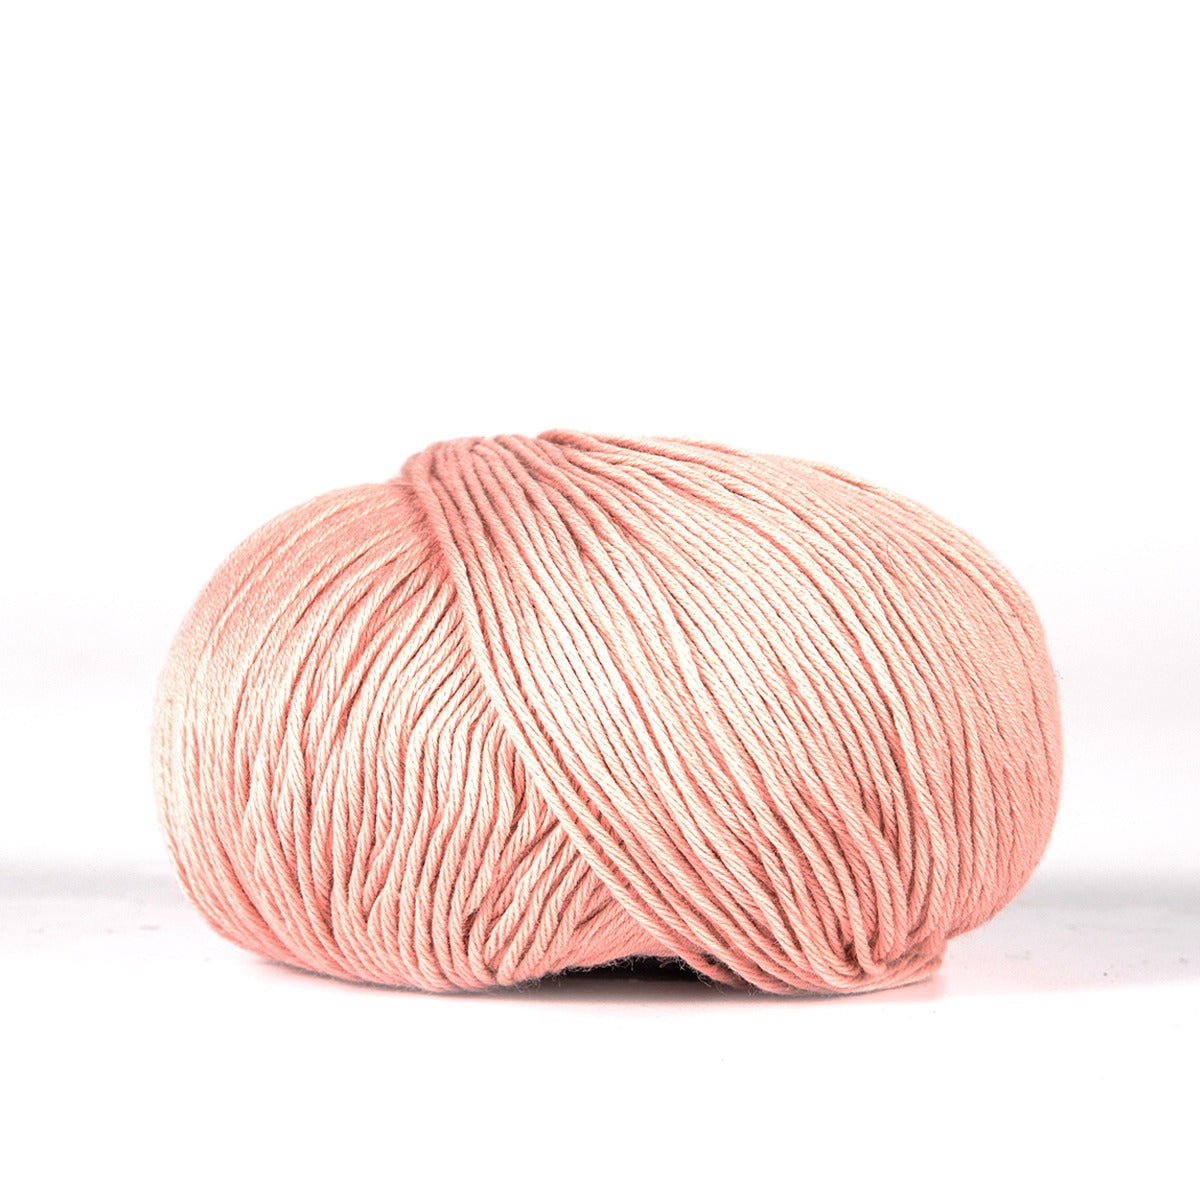 BC Garn Yarn 32 powder pink Alba